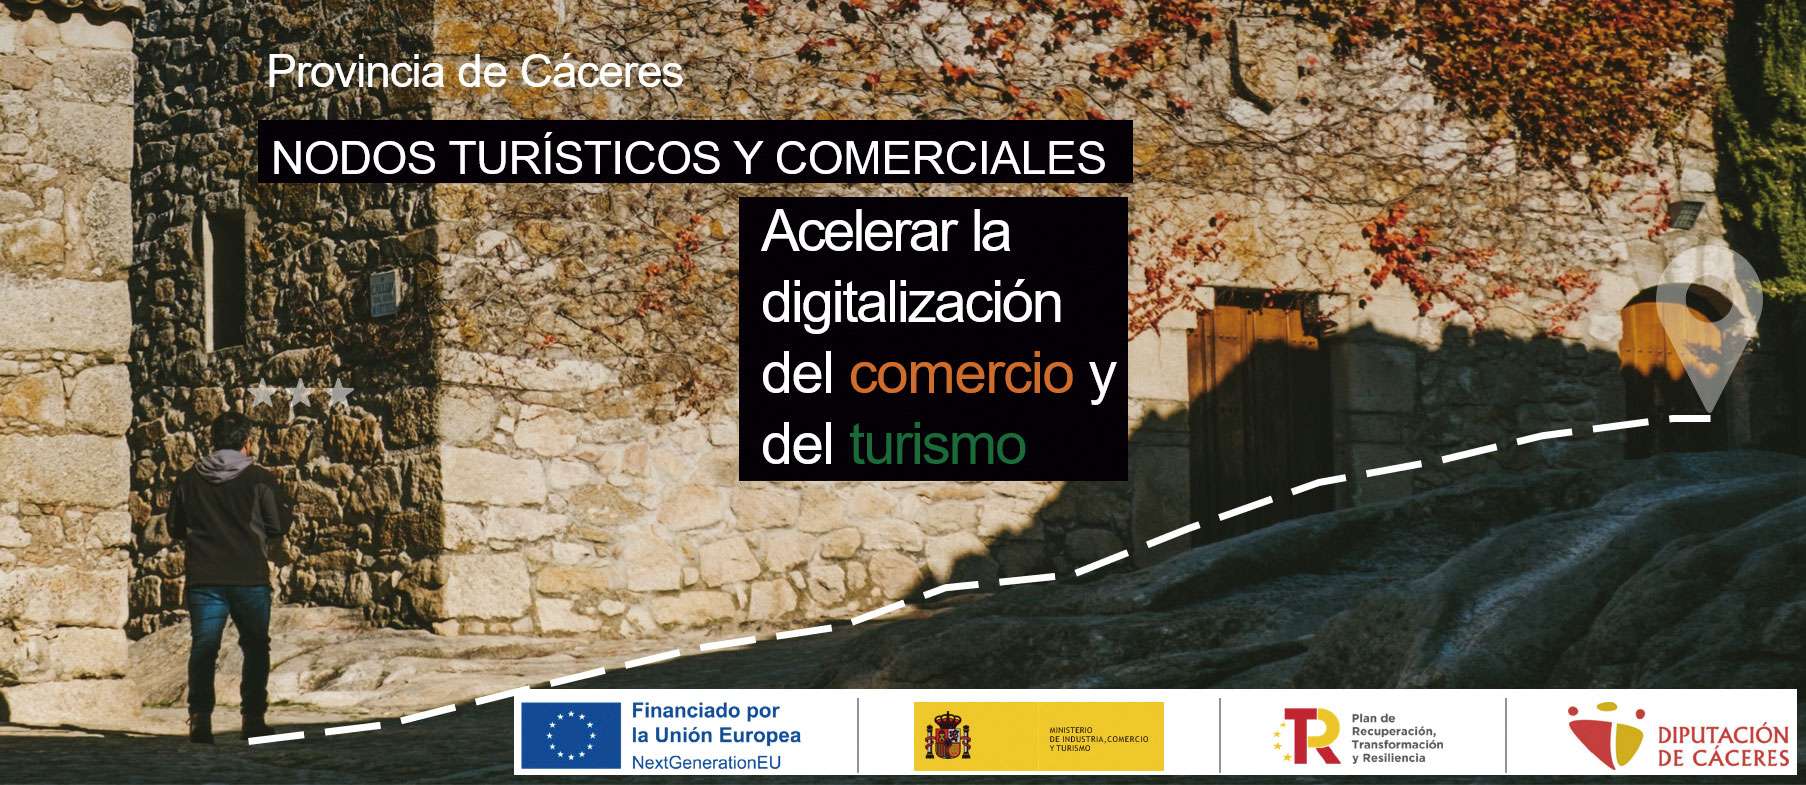 El proyecto ‘NODOS Turísticos y Comerciales’ promueve la transformación digital del comercio en la provincia de Cáceres